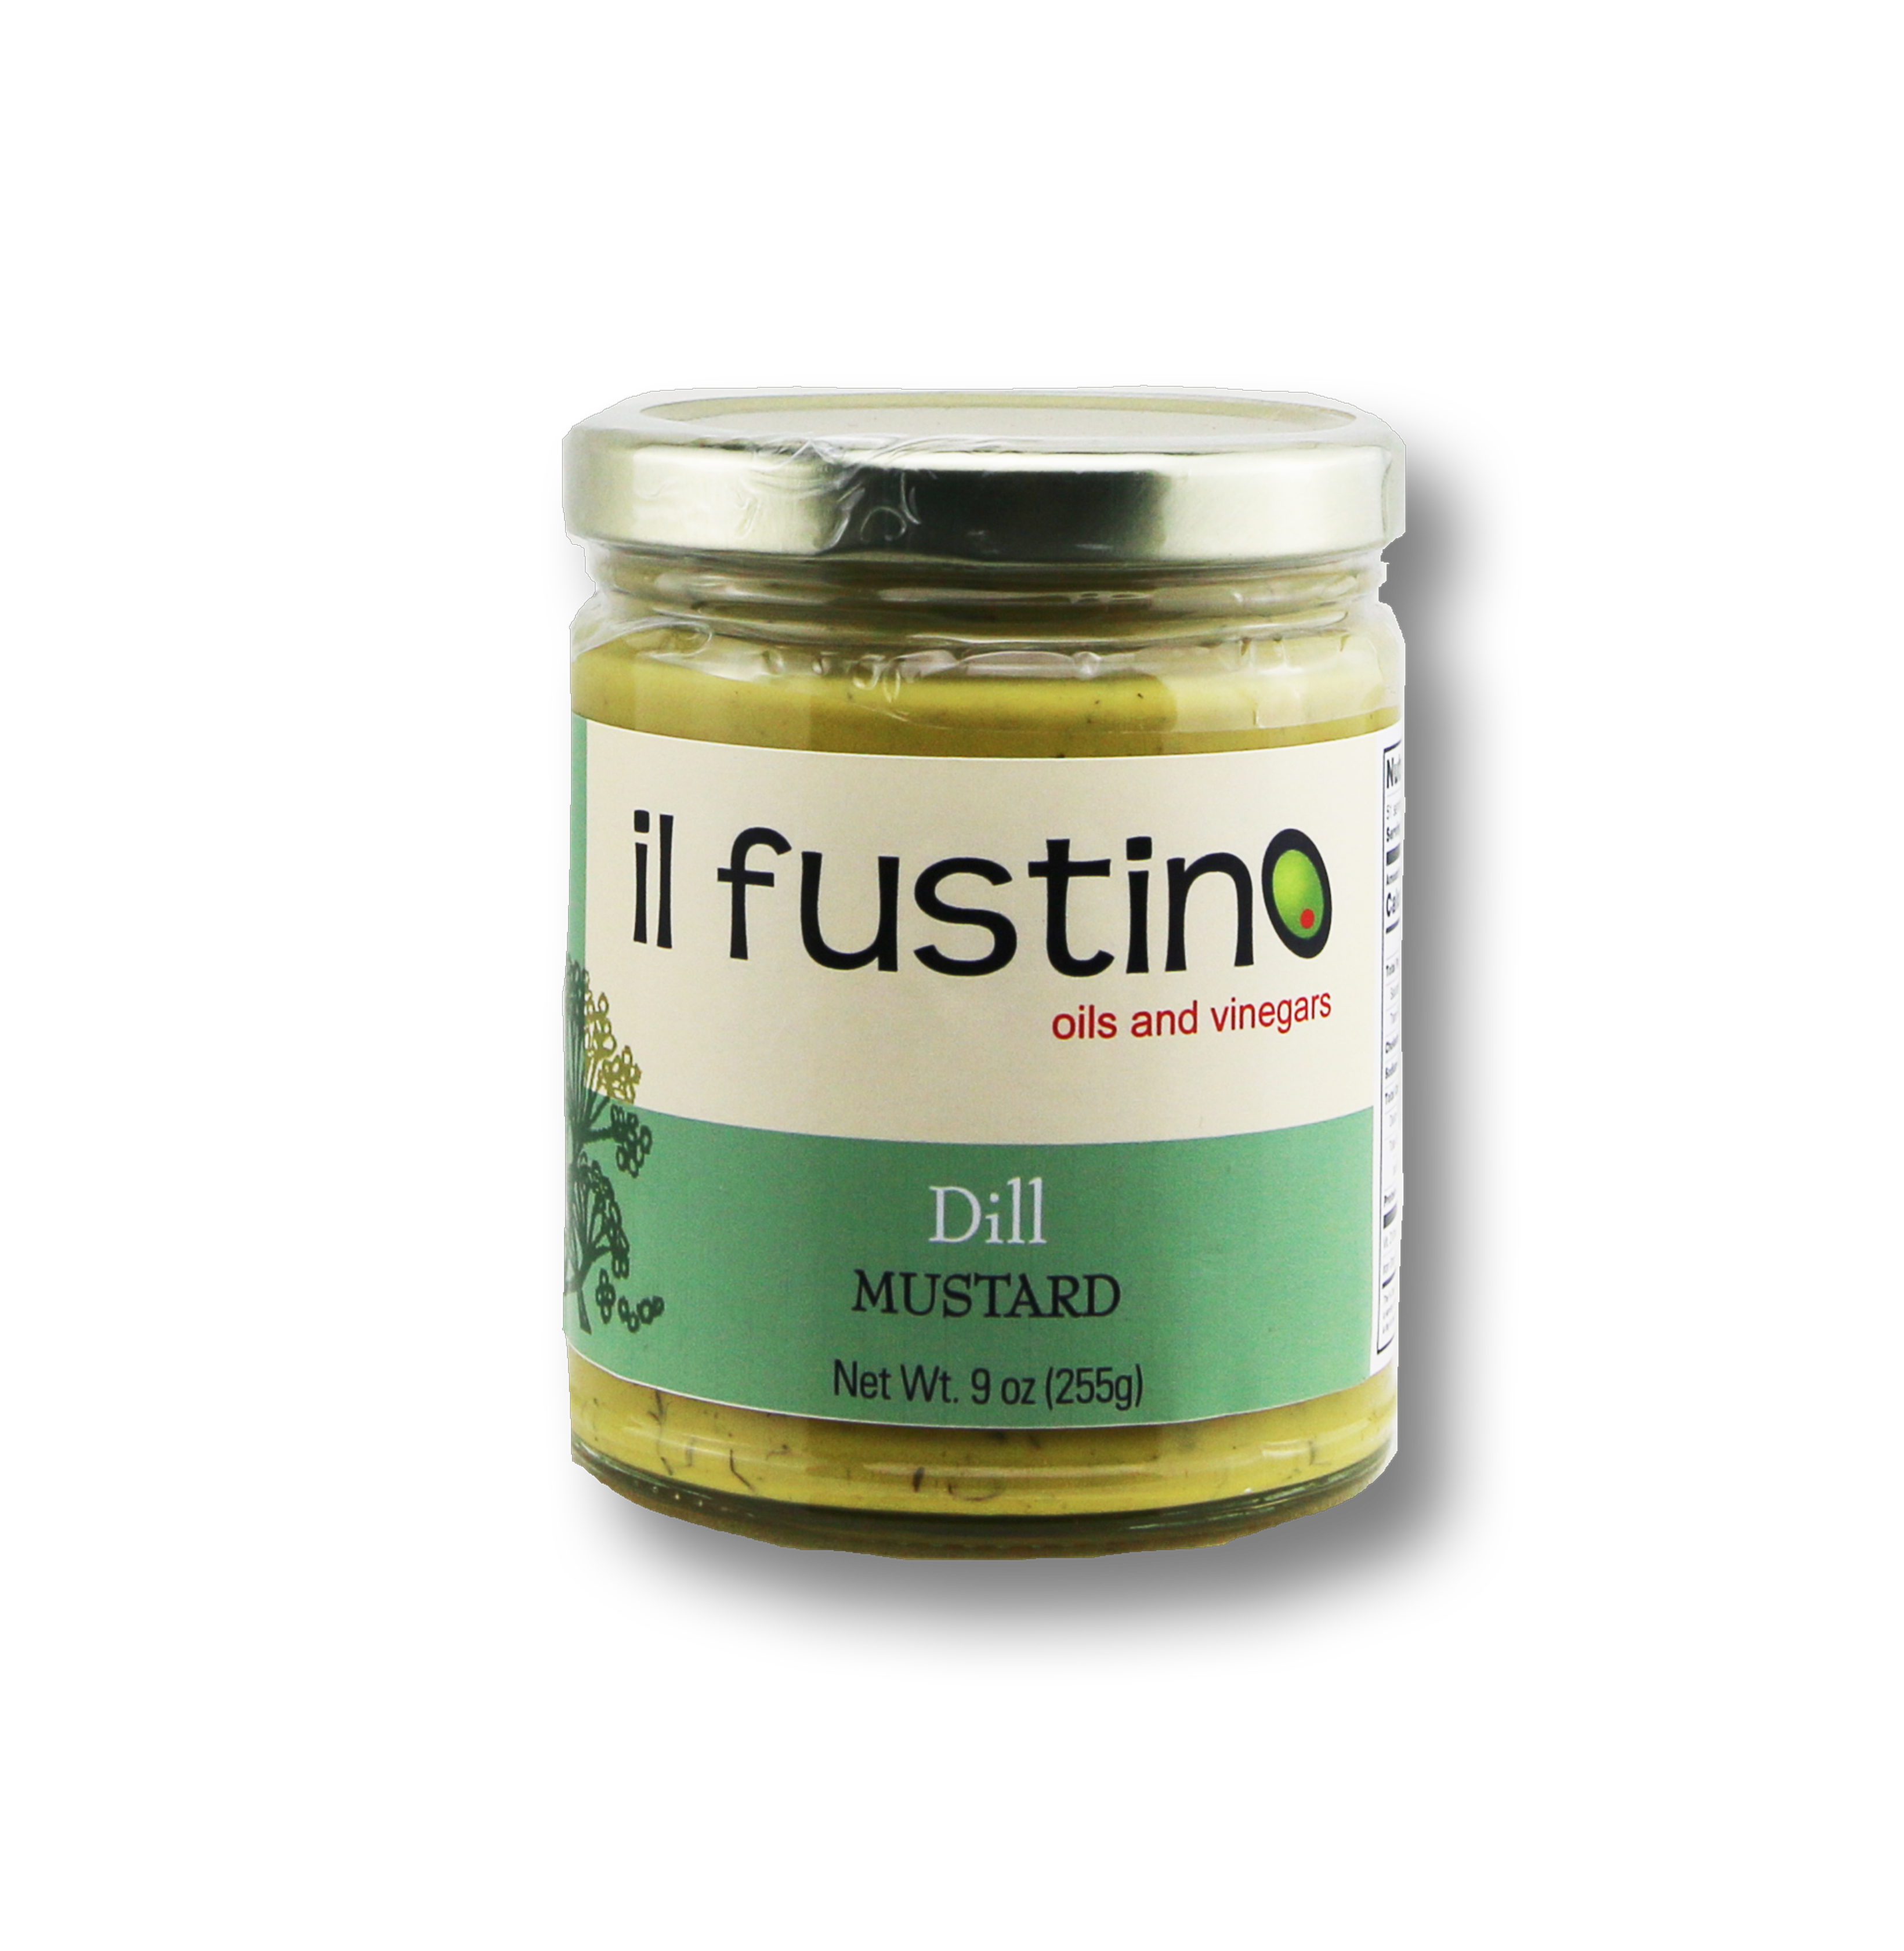 Dill Mustard